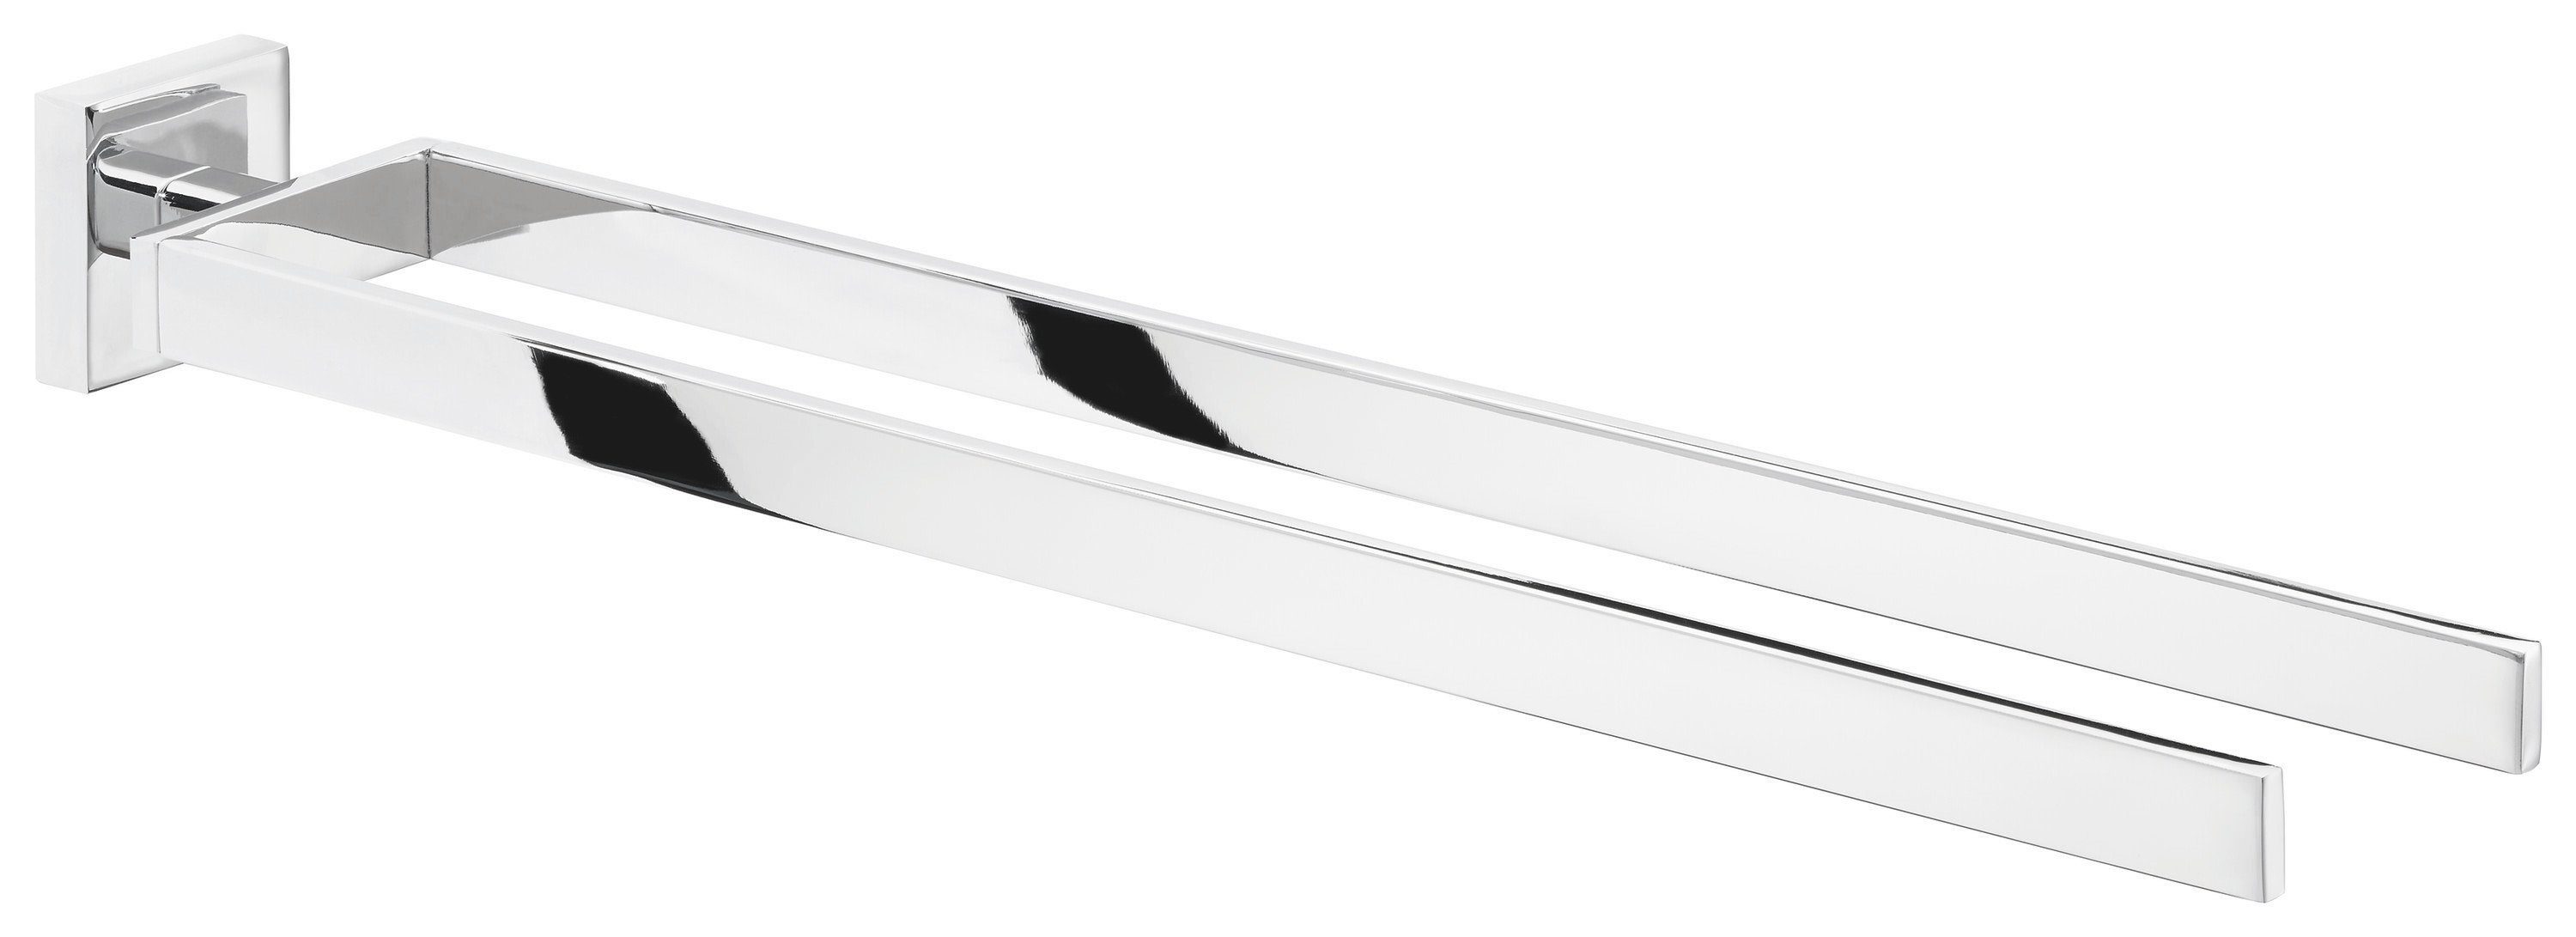 tesa Doppelhandtuchhalter DELUXXE Полотенцесушители ohne Bohren - 5,0 cm : 7,2 cm : 45 cm, selbstklebende Handtuchstange - chrom - silber glänzend